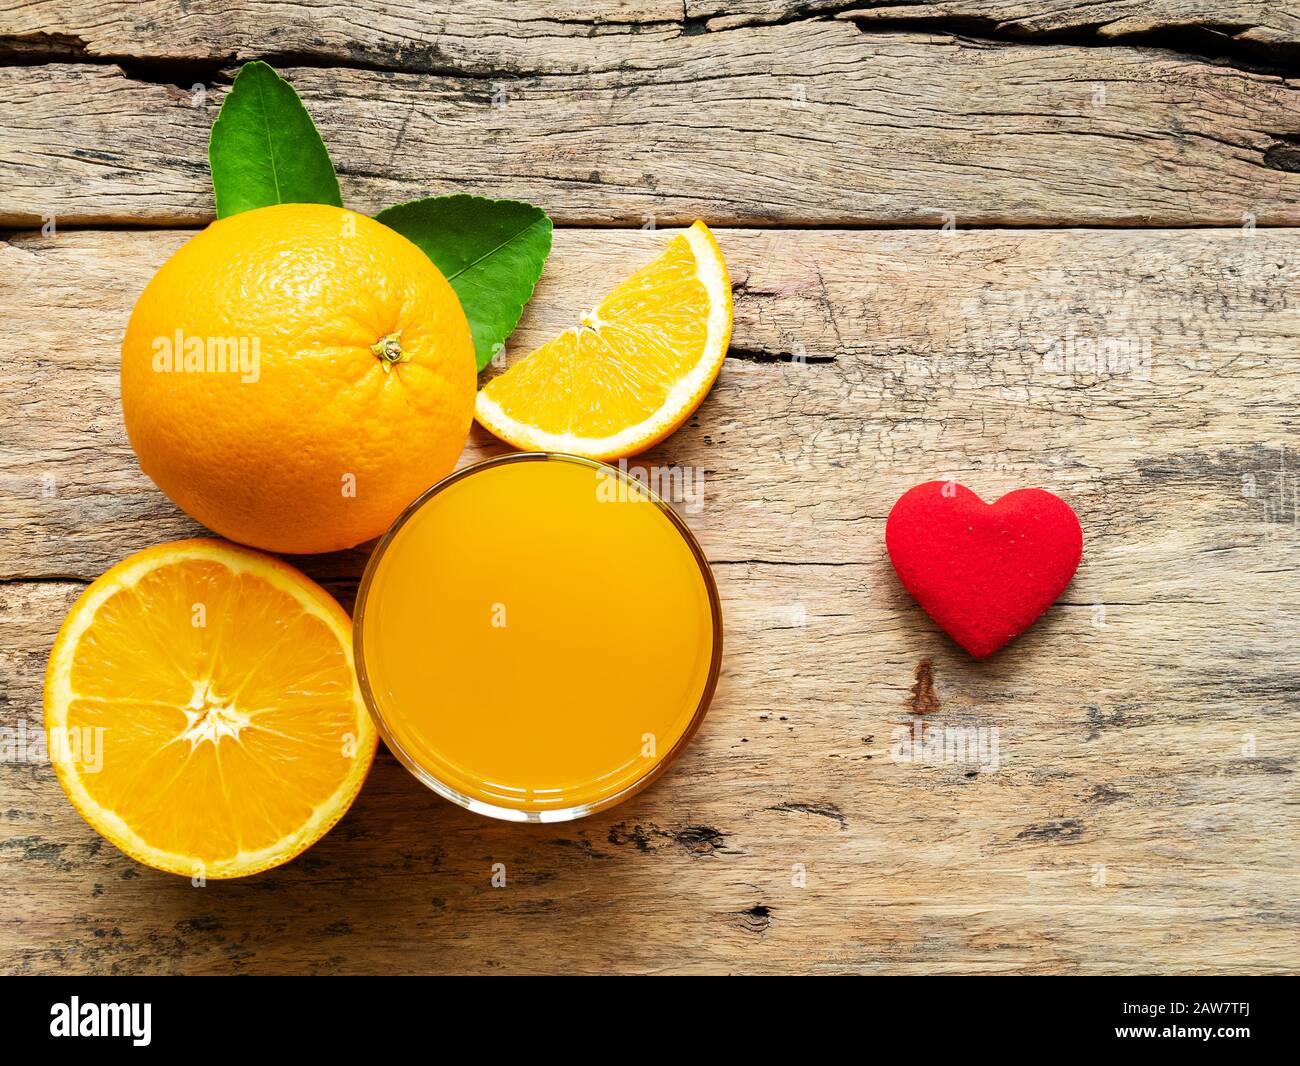 Ein Glas frischen Orangensaft und eine Gruppe frischer Orangenfrüchte mit grünen Blättern, auf Holzhintergrund mit roter Herzform, Vitamin C und Fruchsprodu Stockfoto